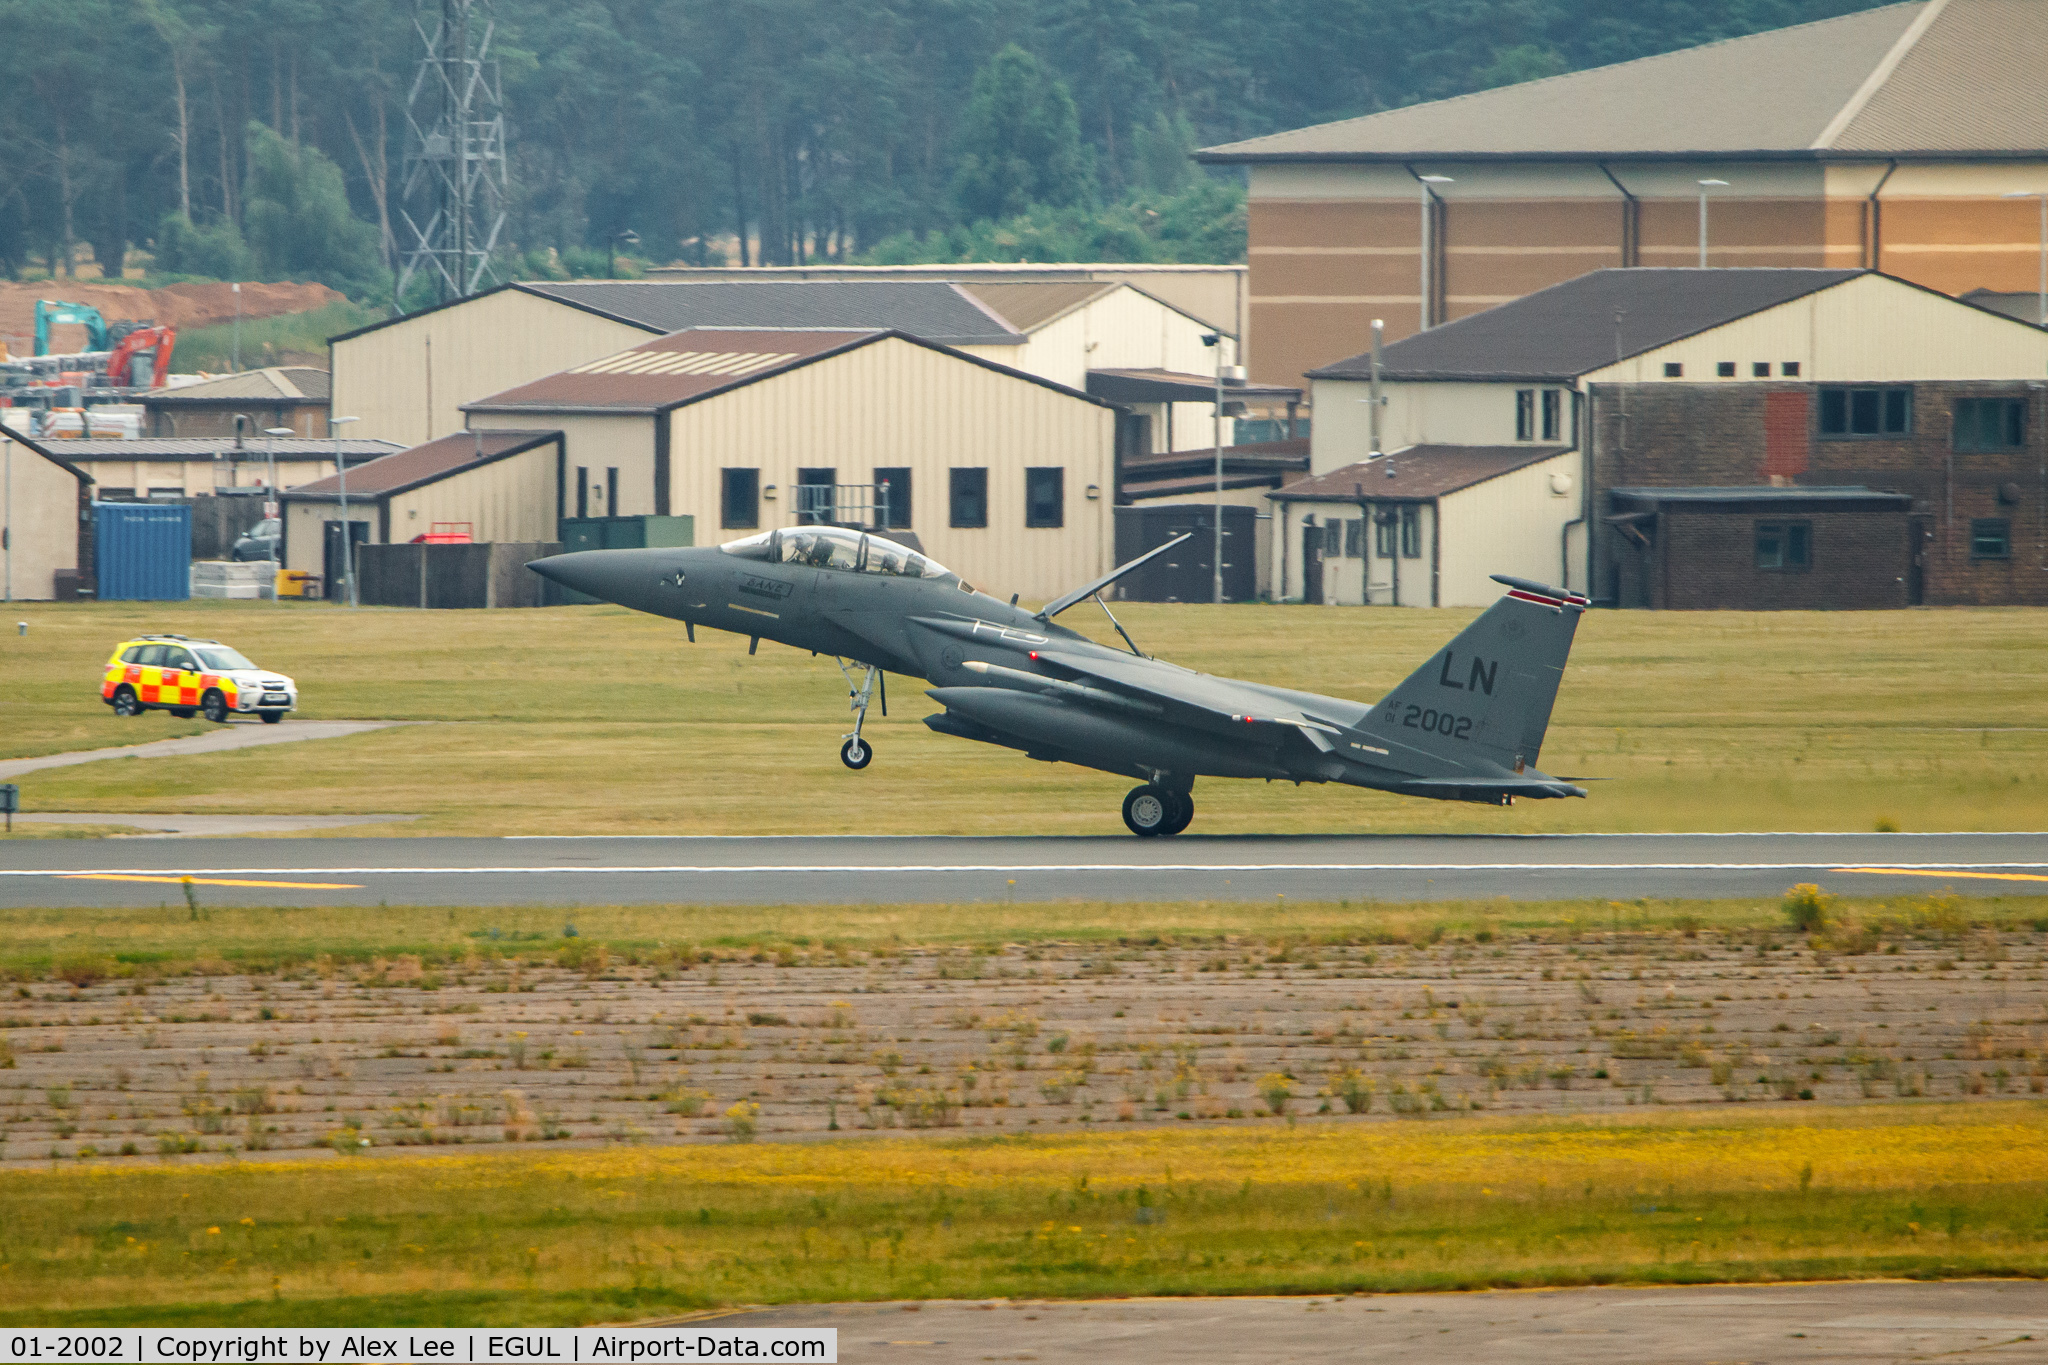 01-2002, 2001 McDonnell Douglas F-15E Strike Eagle C/N 1373/E234, Landing at Lakeheath